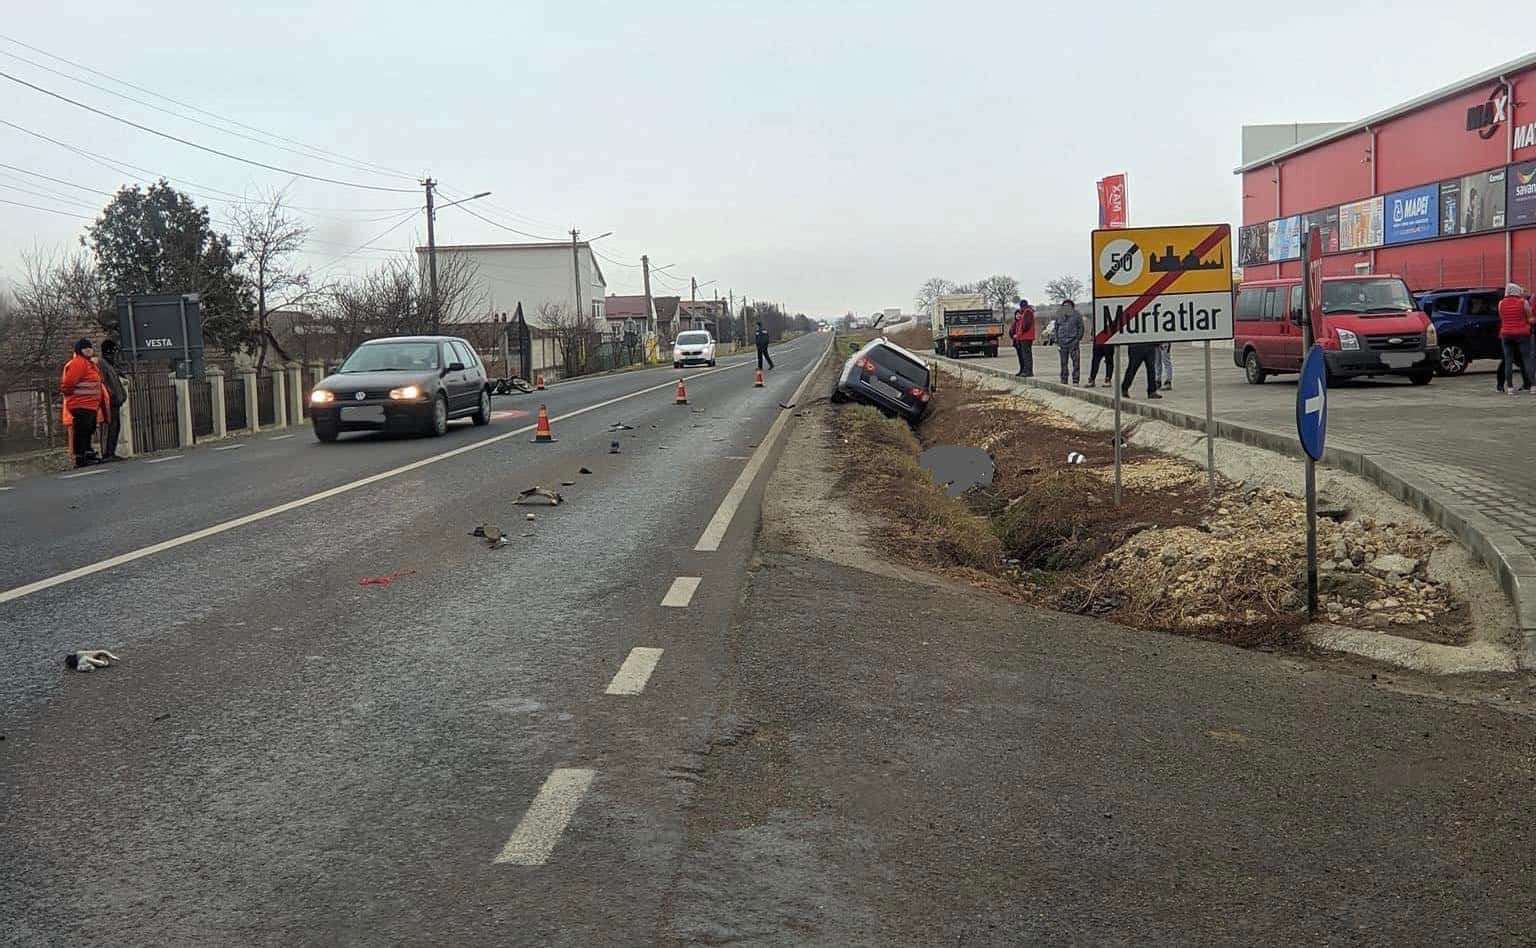 accident constanta infotrafic romania foto